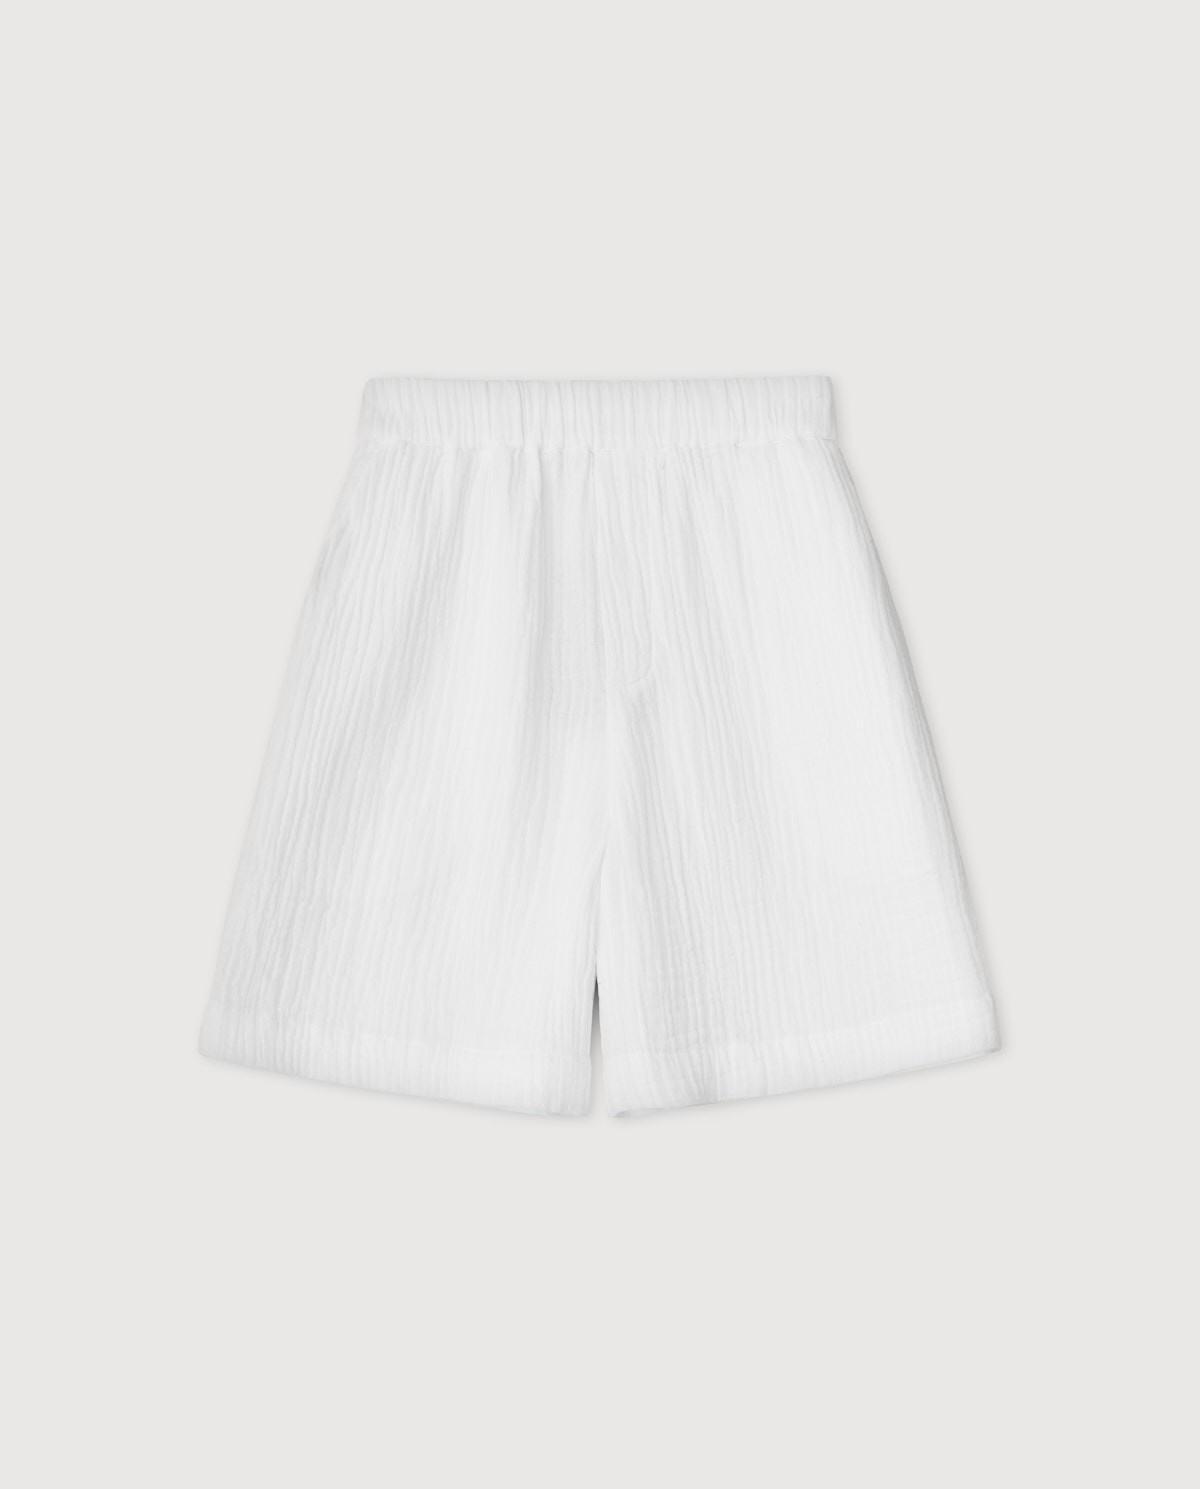 Pantalón corto 100% algodón OPTICAL WHITE 6